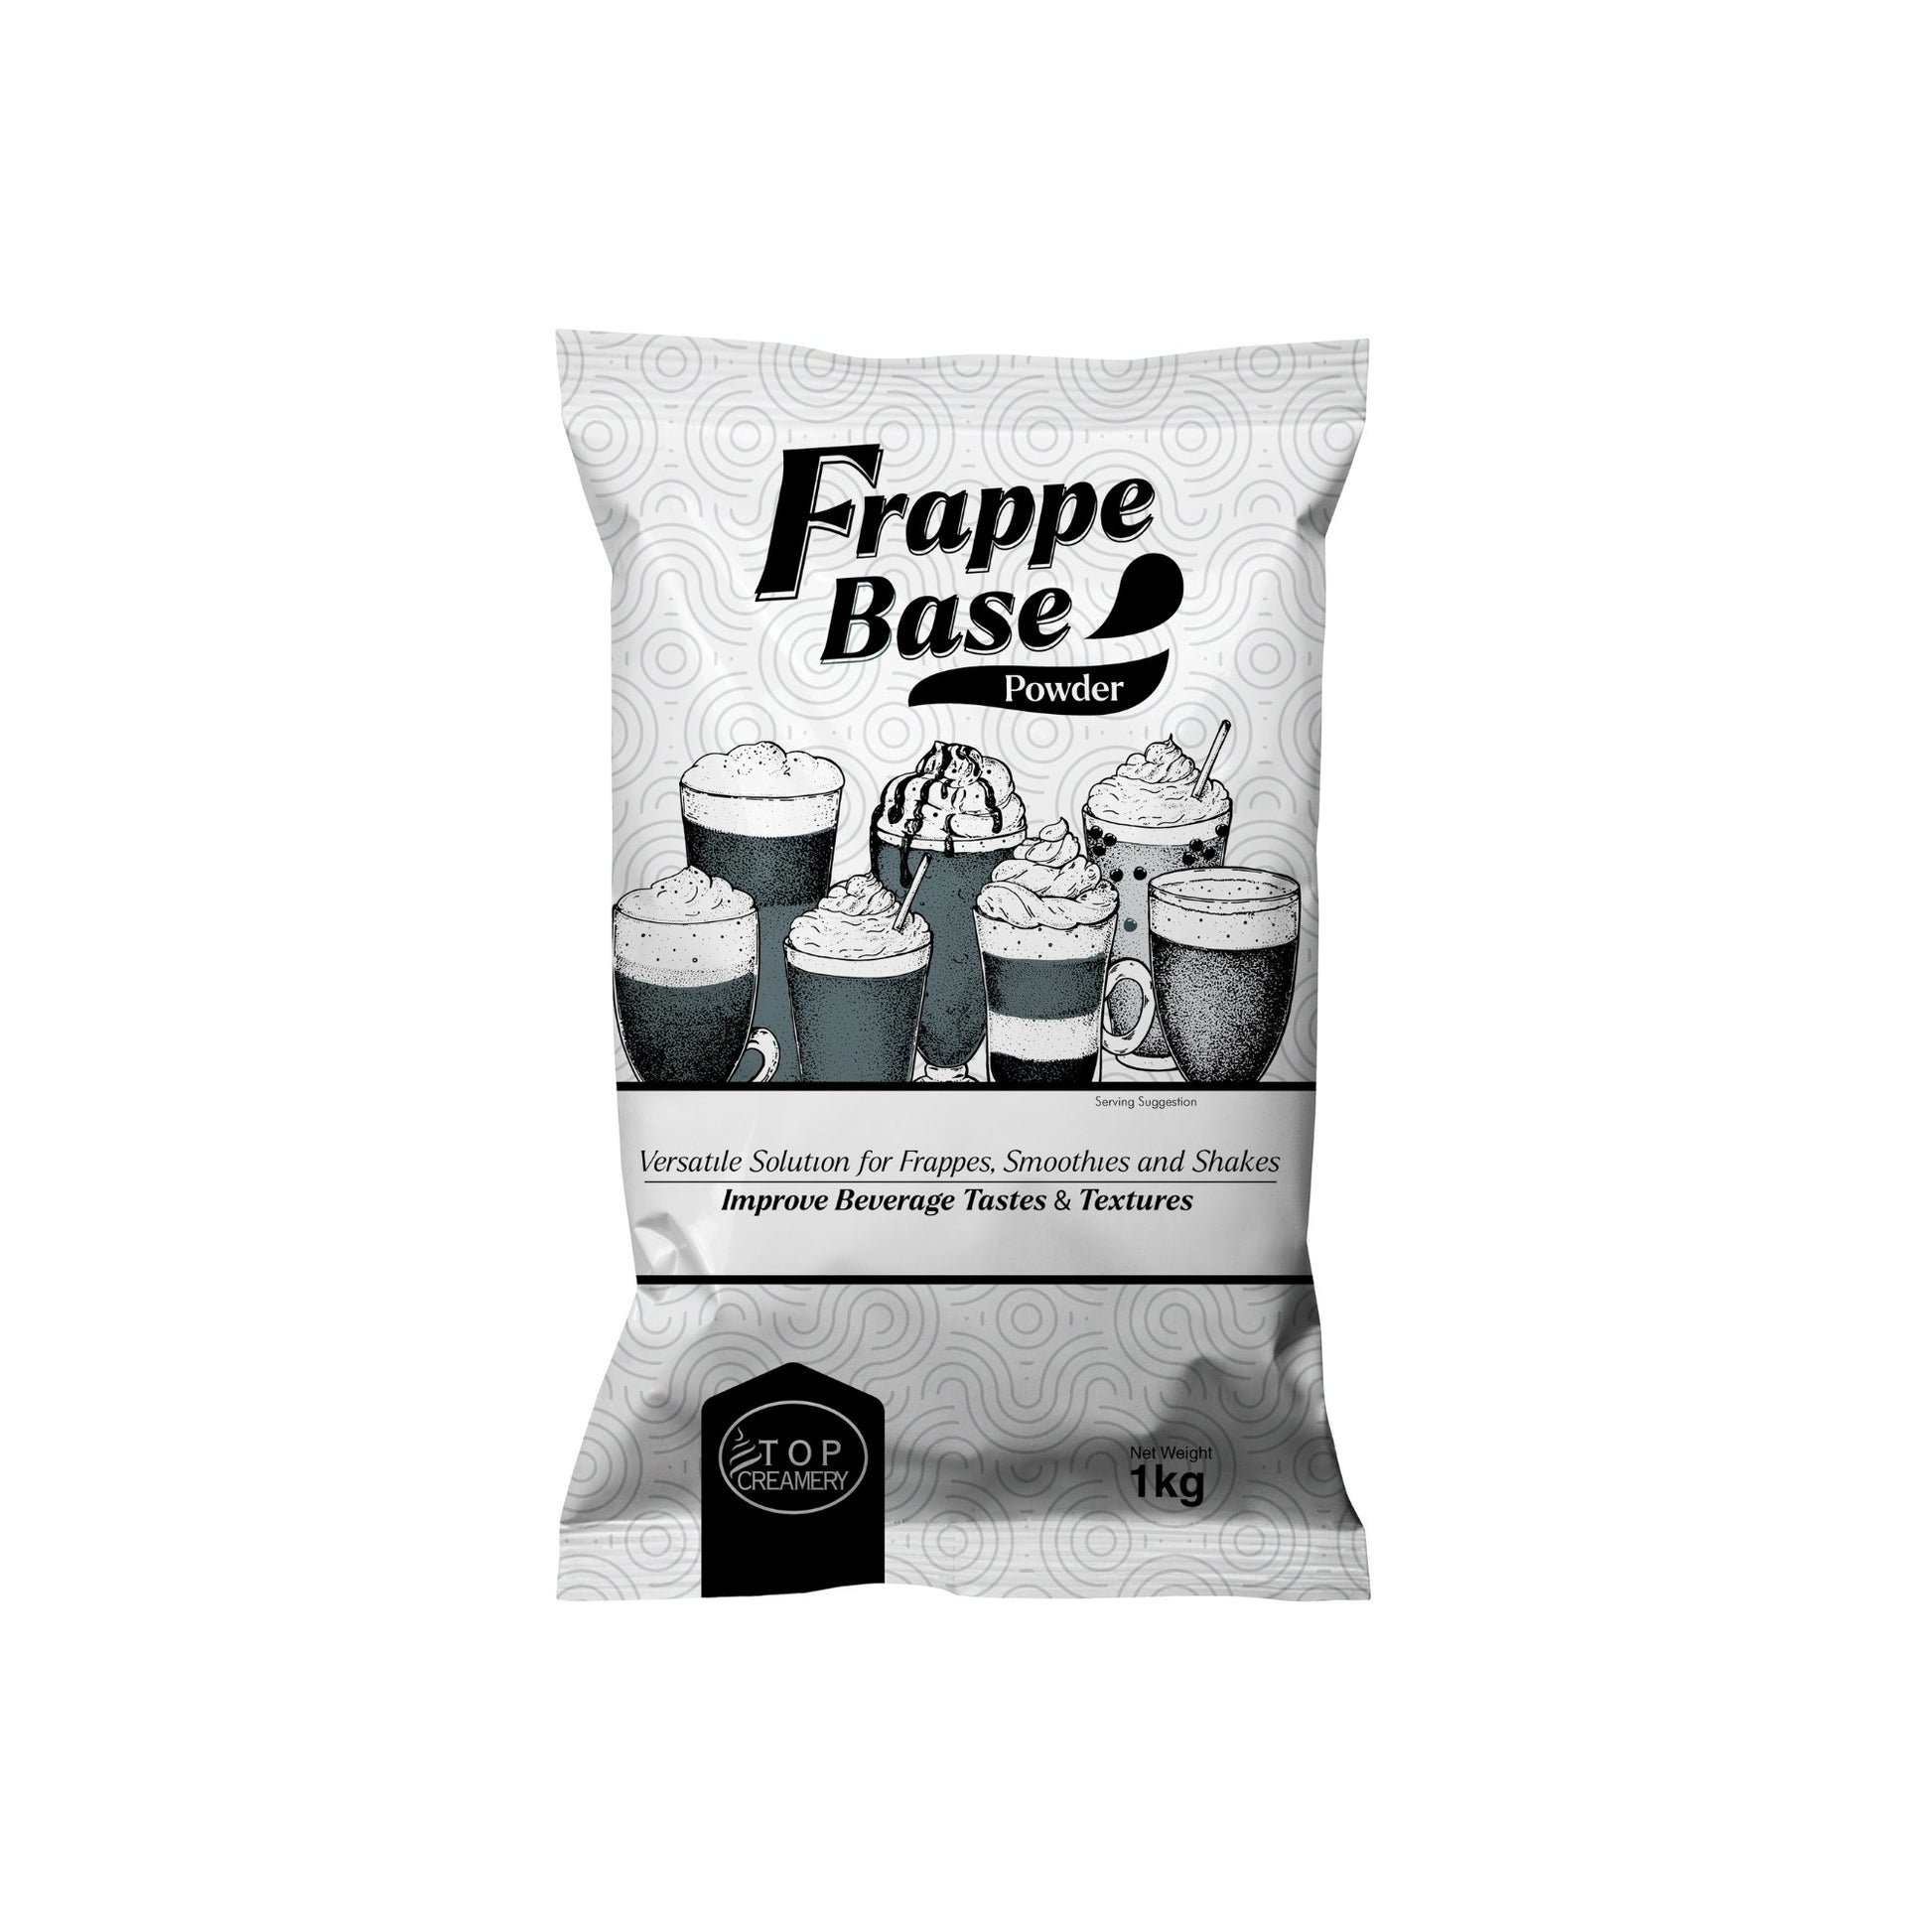 TOP Creamery Frappe Base Powder 1kg - Kreme City Supplies